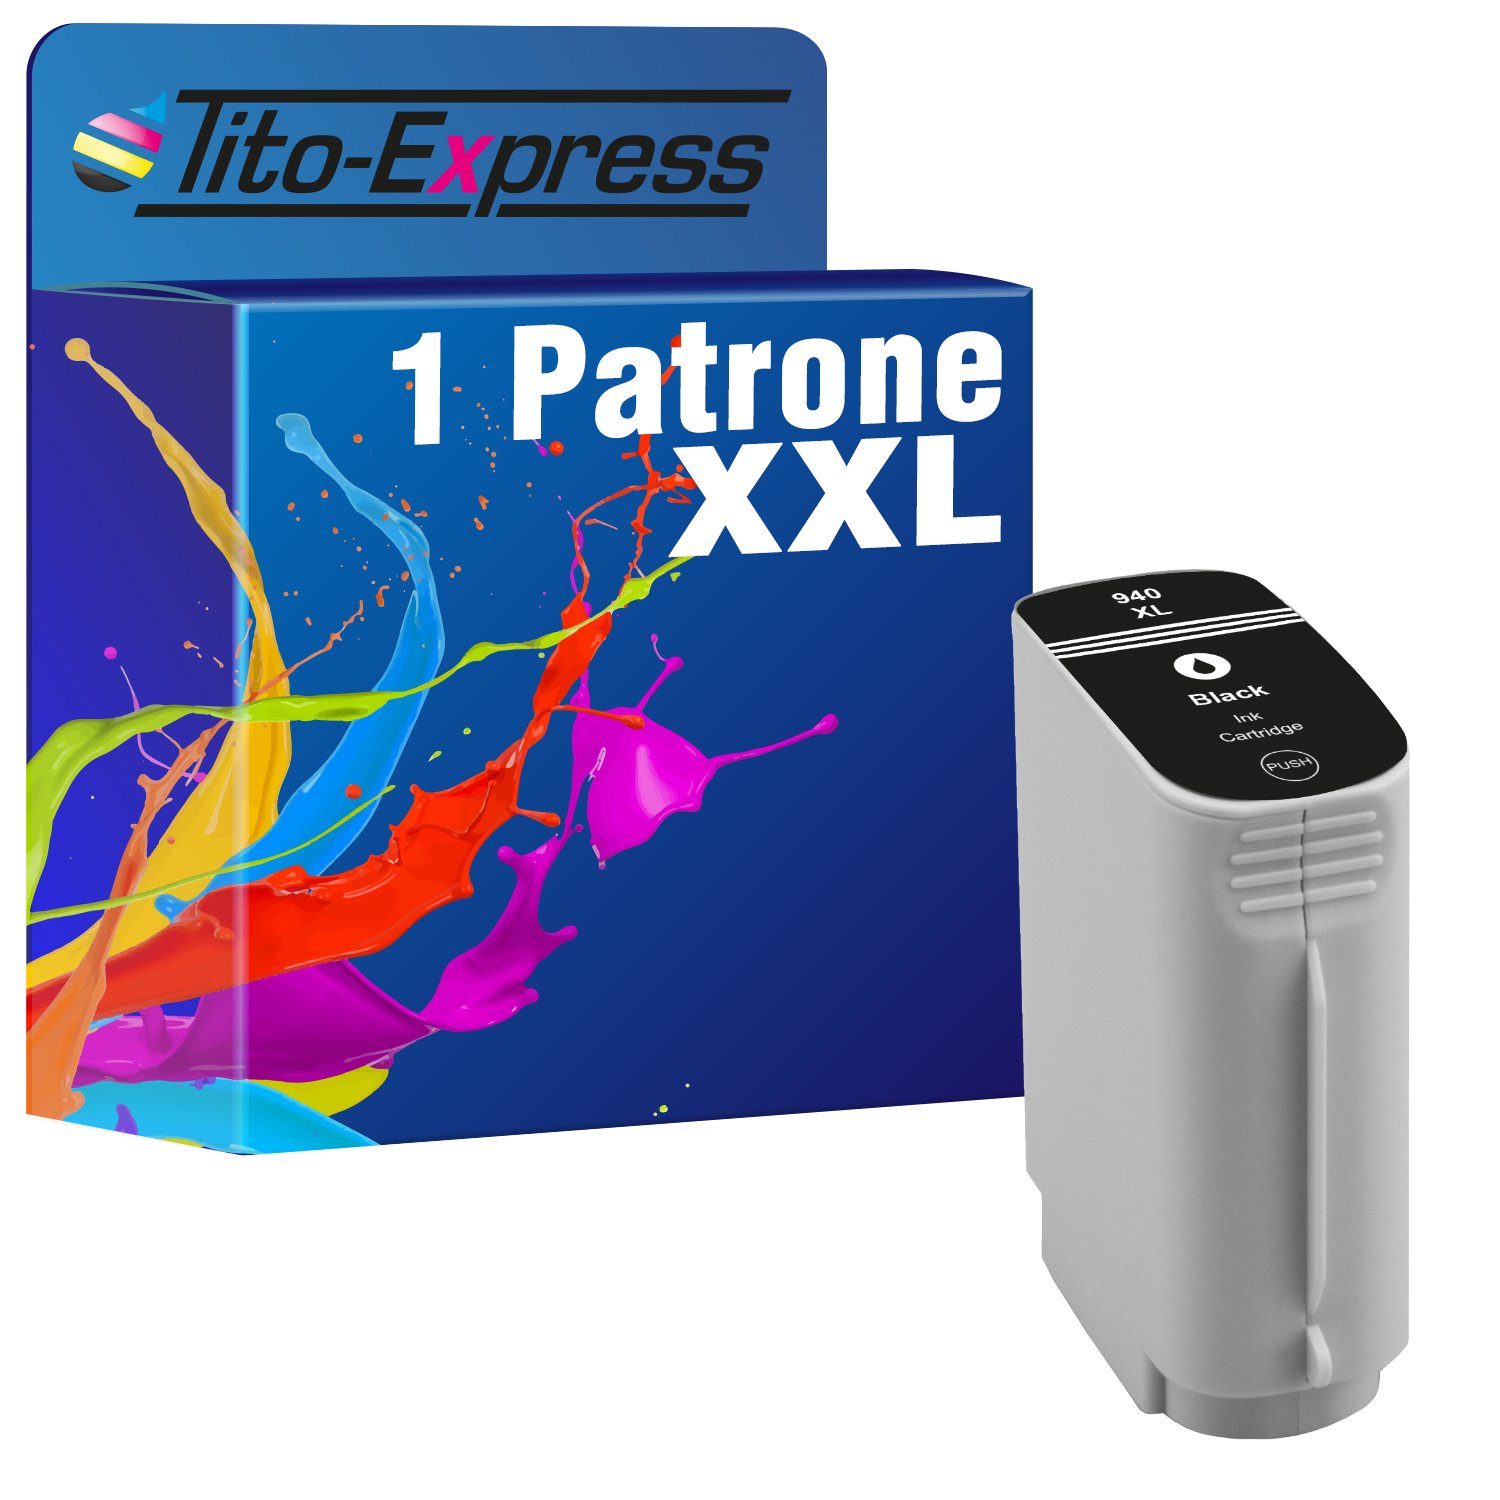 8500A Pro HP ersetzt Wireless Black Enterprise XL 8000 OfficeJet (für Premium) 940 Plus Tintenpatrone 8500 A Tito-Express 940XL